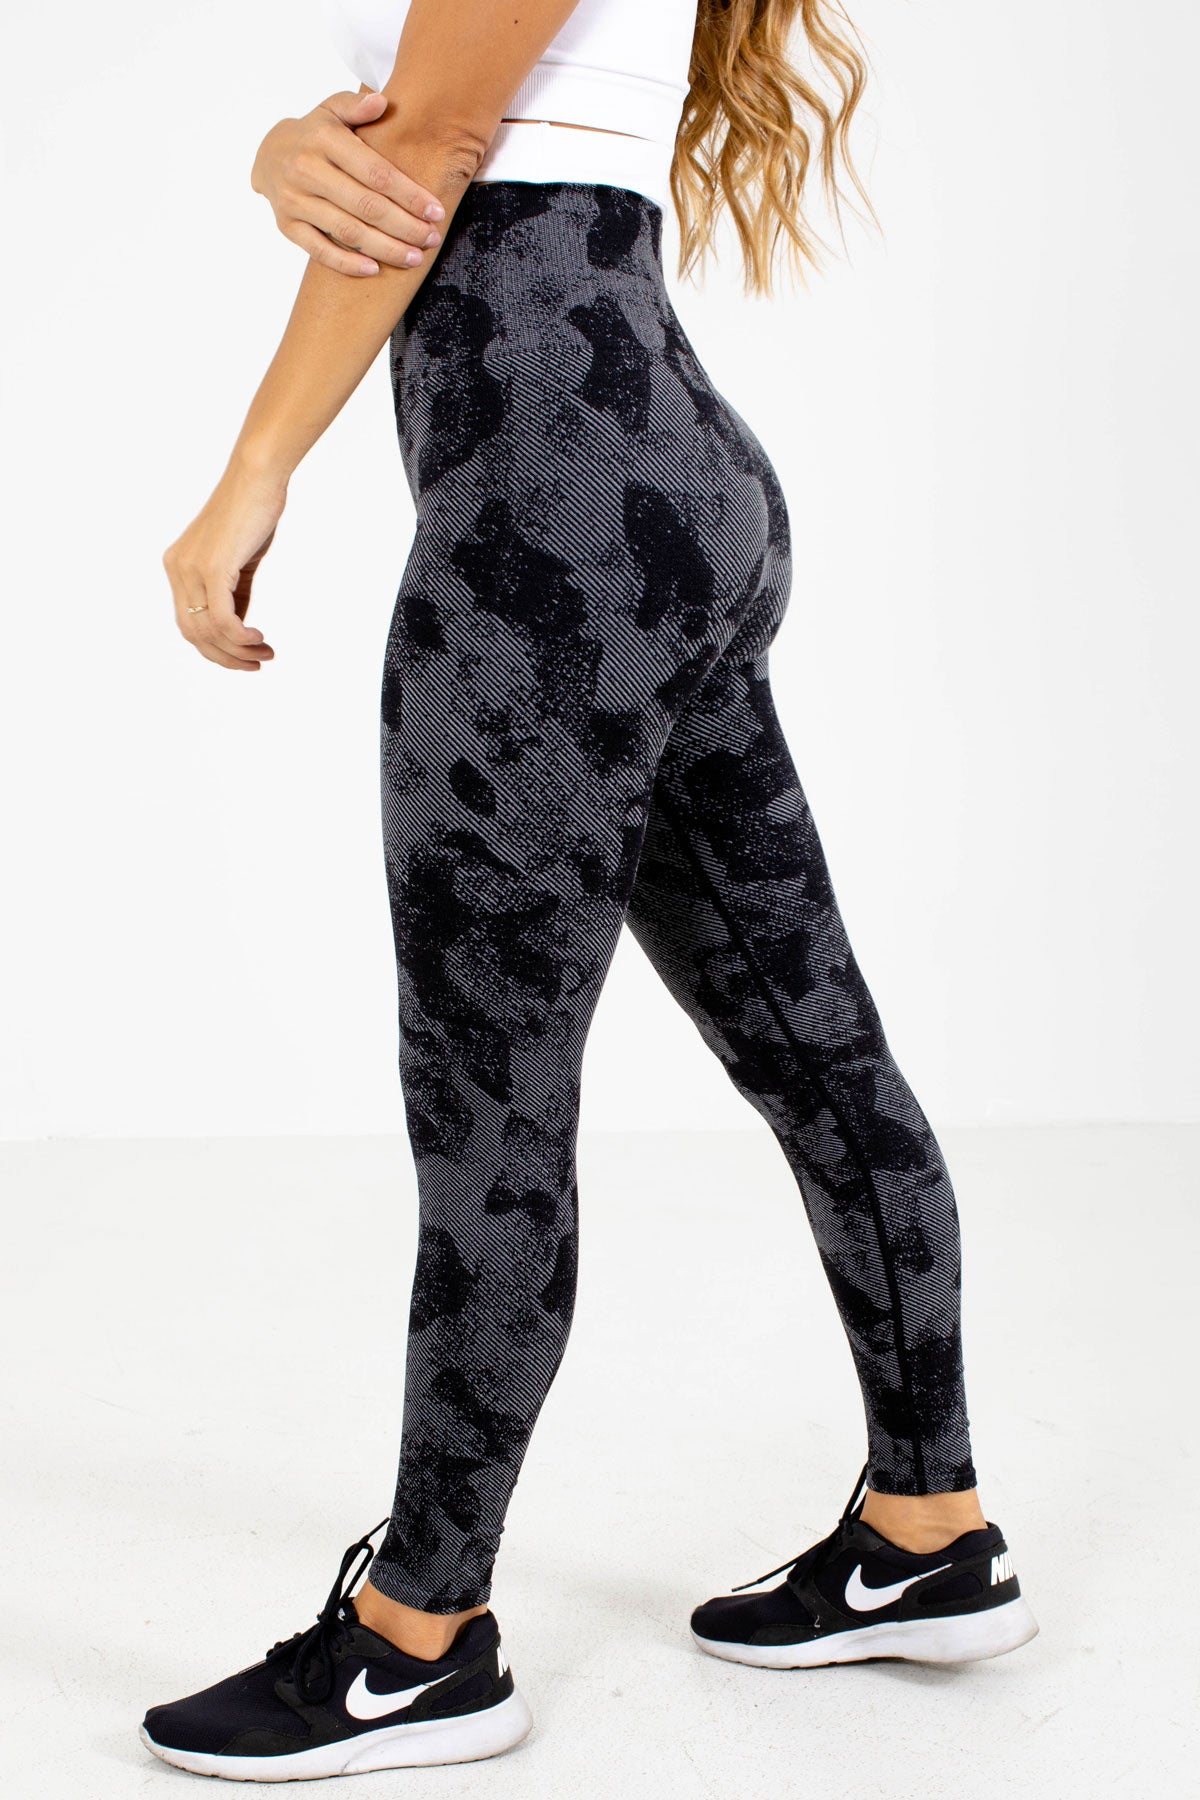 Women's Navy Blue & Black Camouflage Printed Slim-Fit Tights – bukkumstore